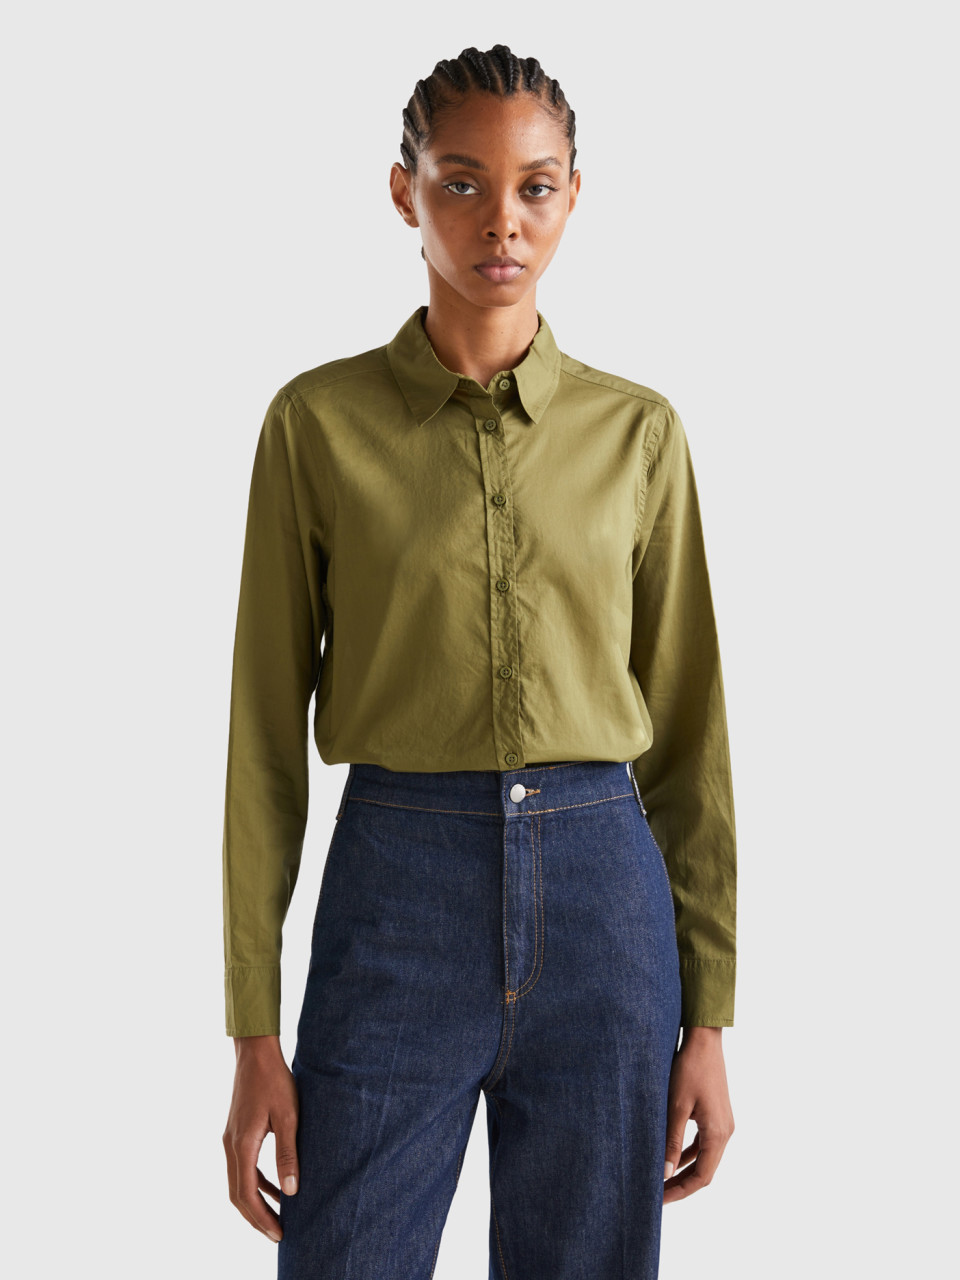 Benetton, Shirt In Lightweight Cotton, Military Green, Women